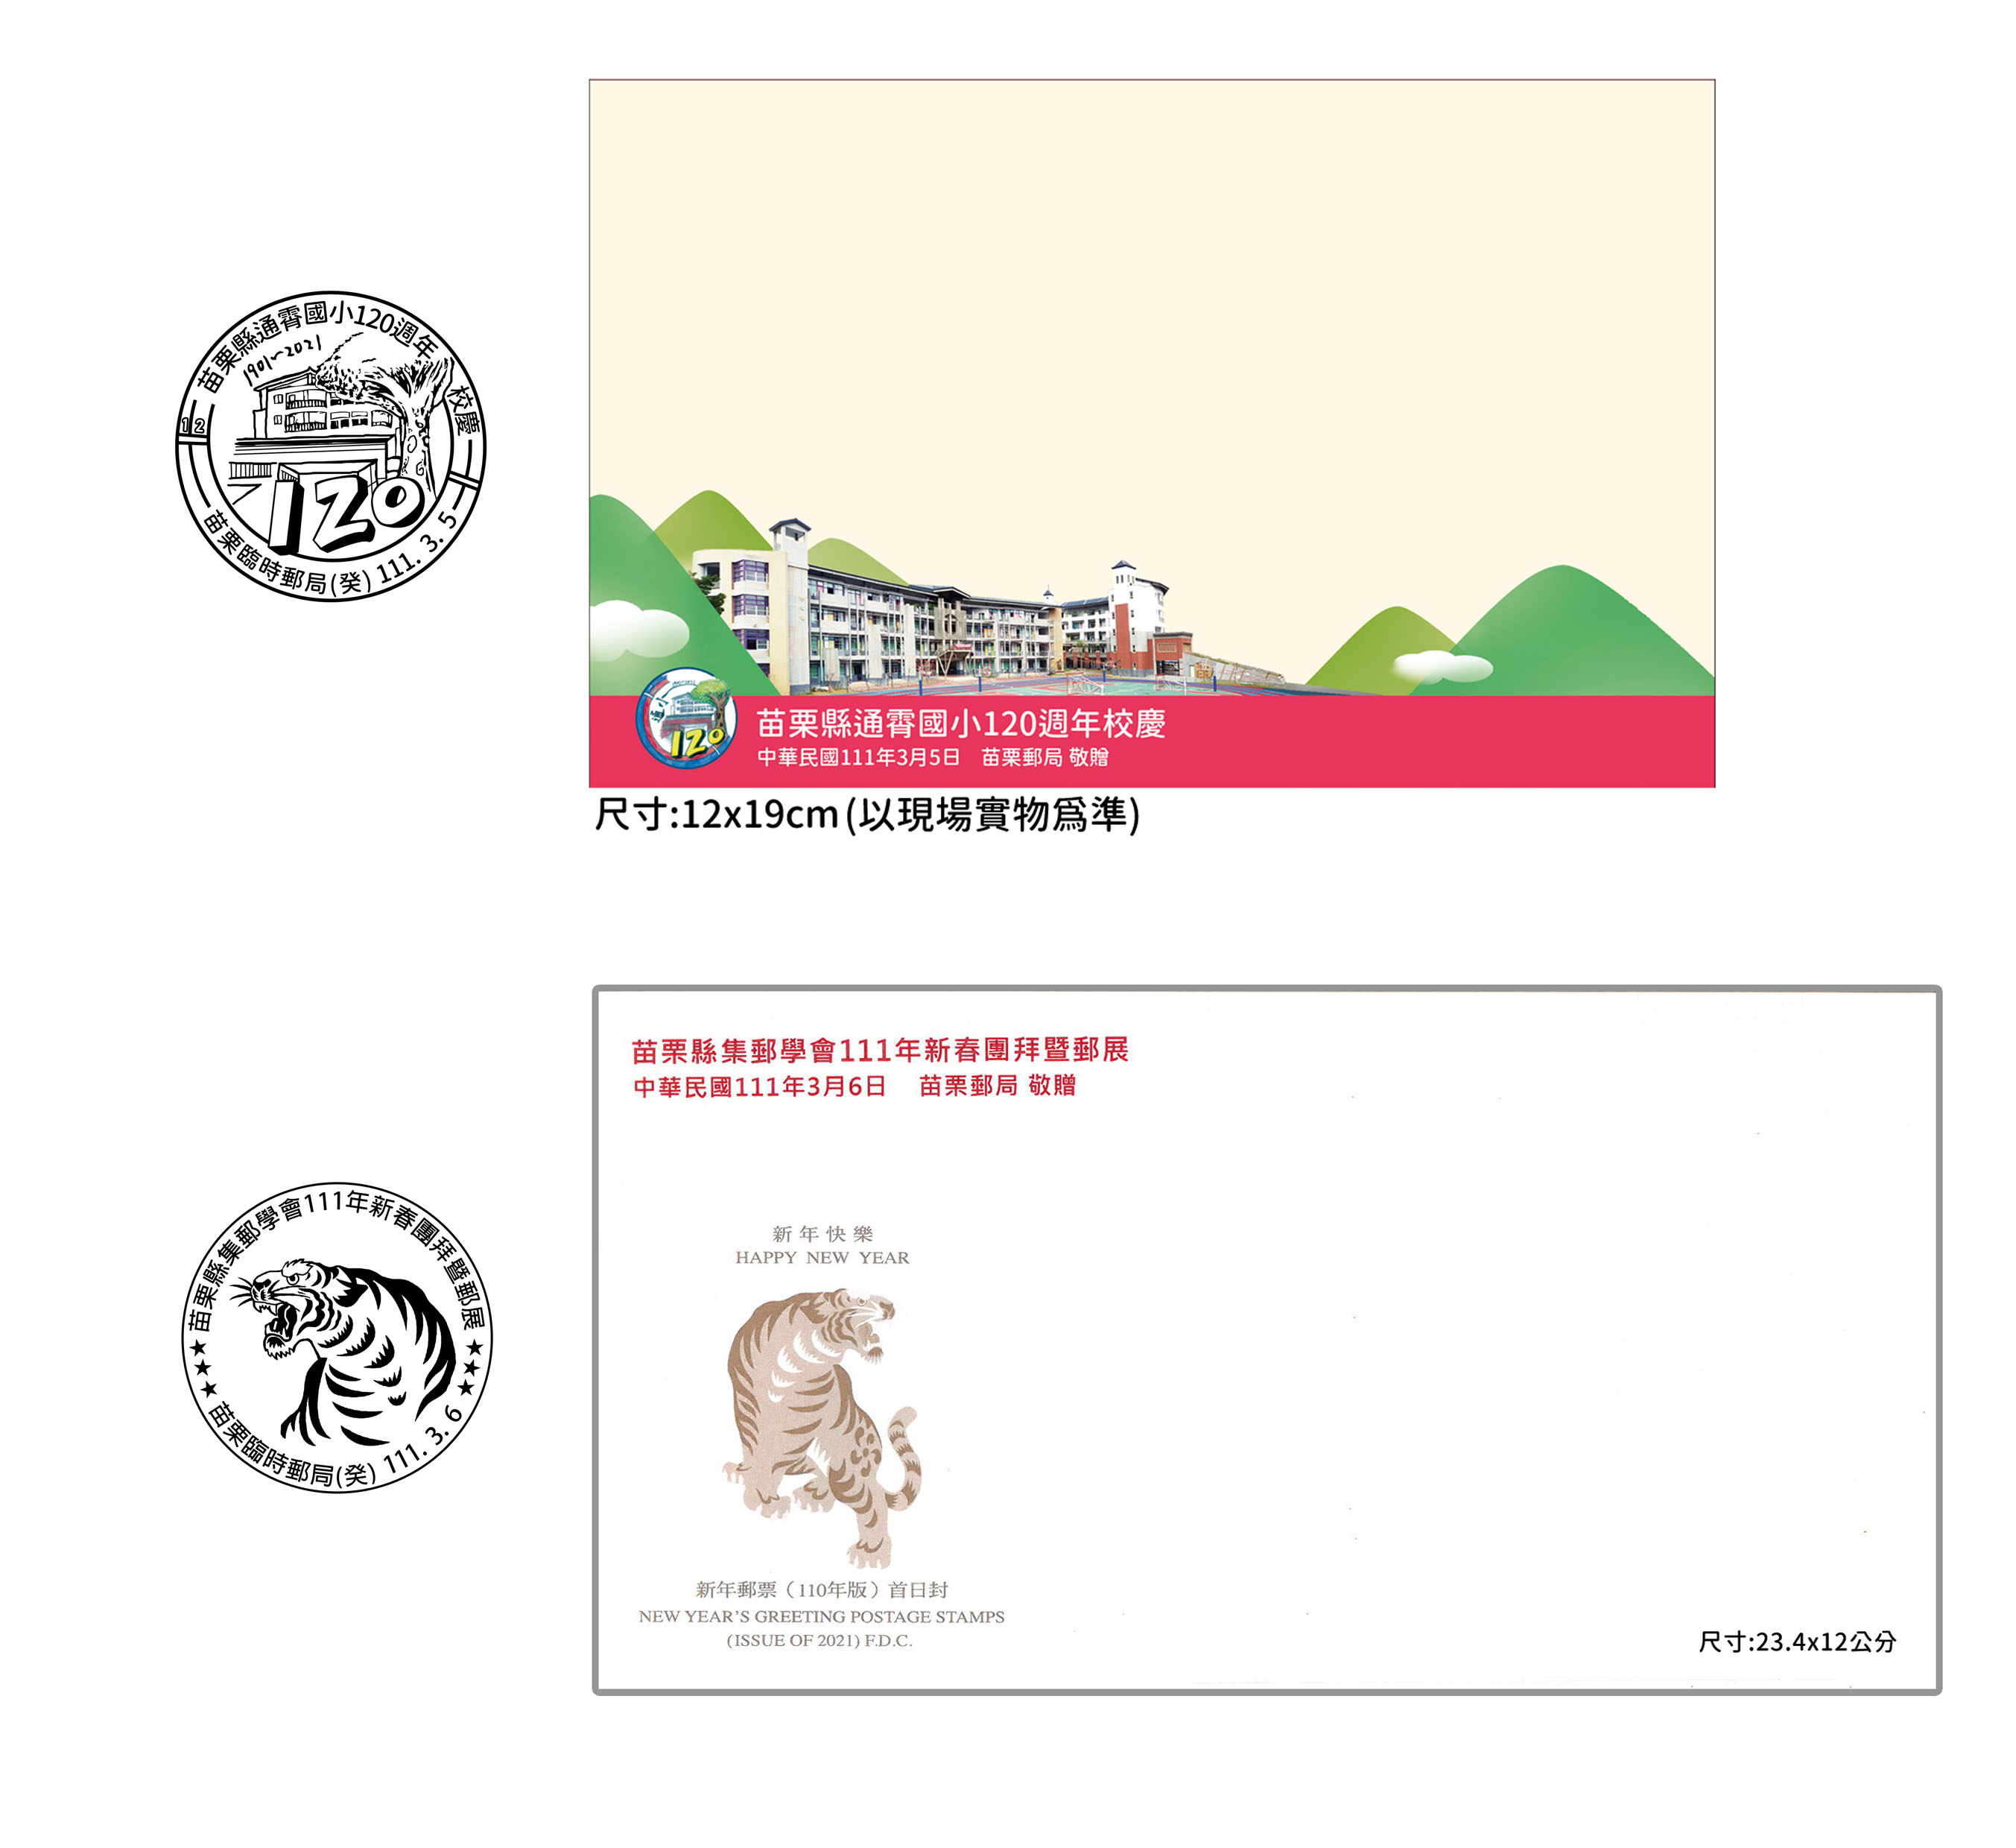 中華郵政全球資訊網 各地郵局最新消息